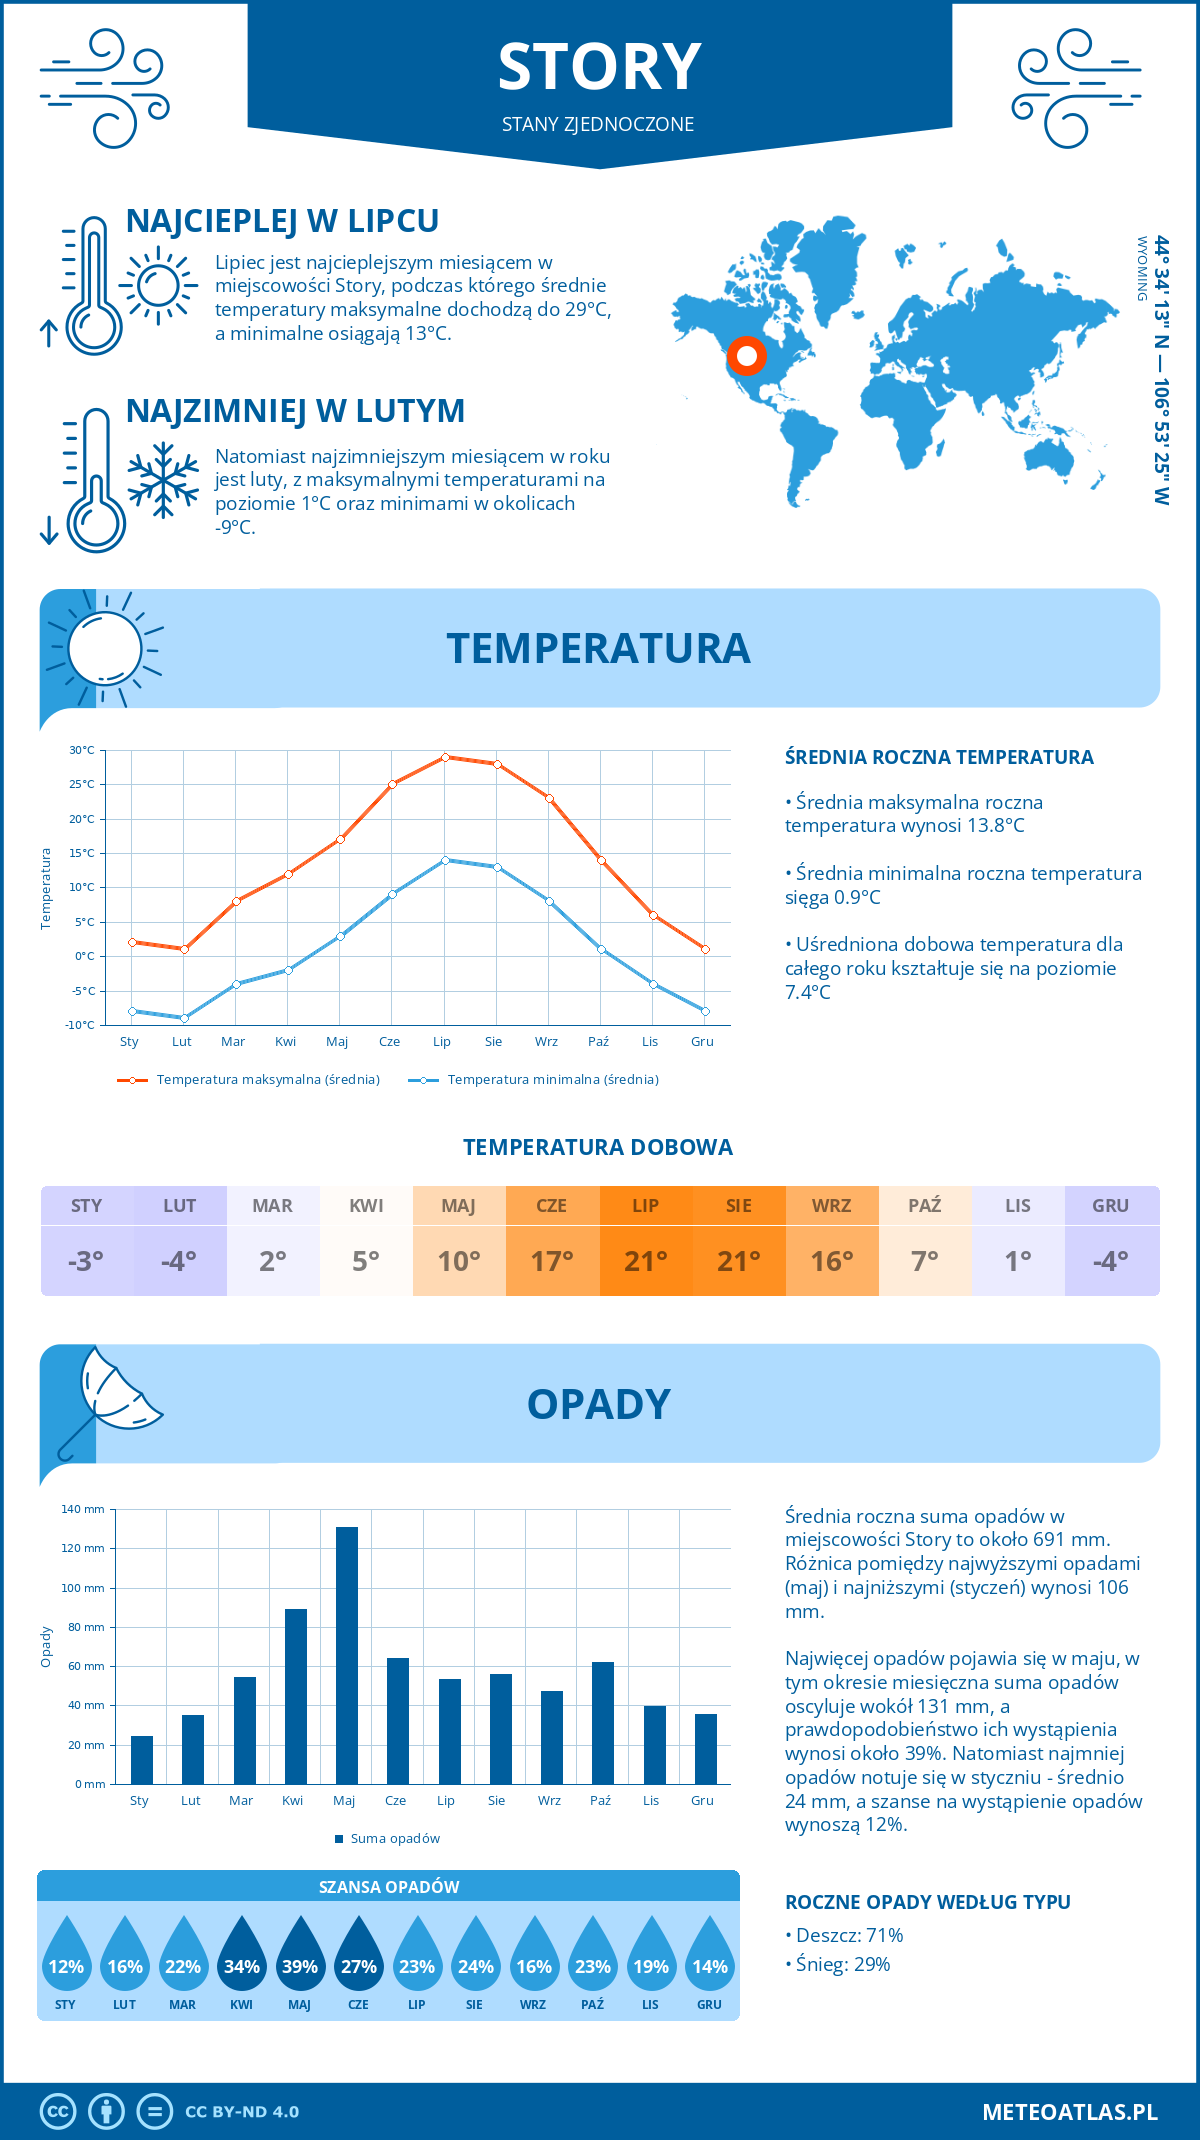 Pogoda Story (Stany Zjednoczone). Temperatura oraz opady.